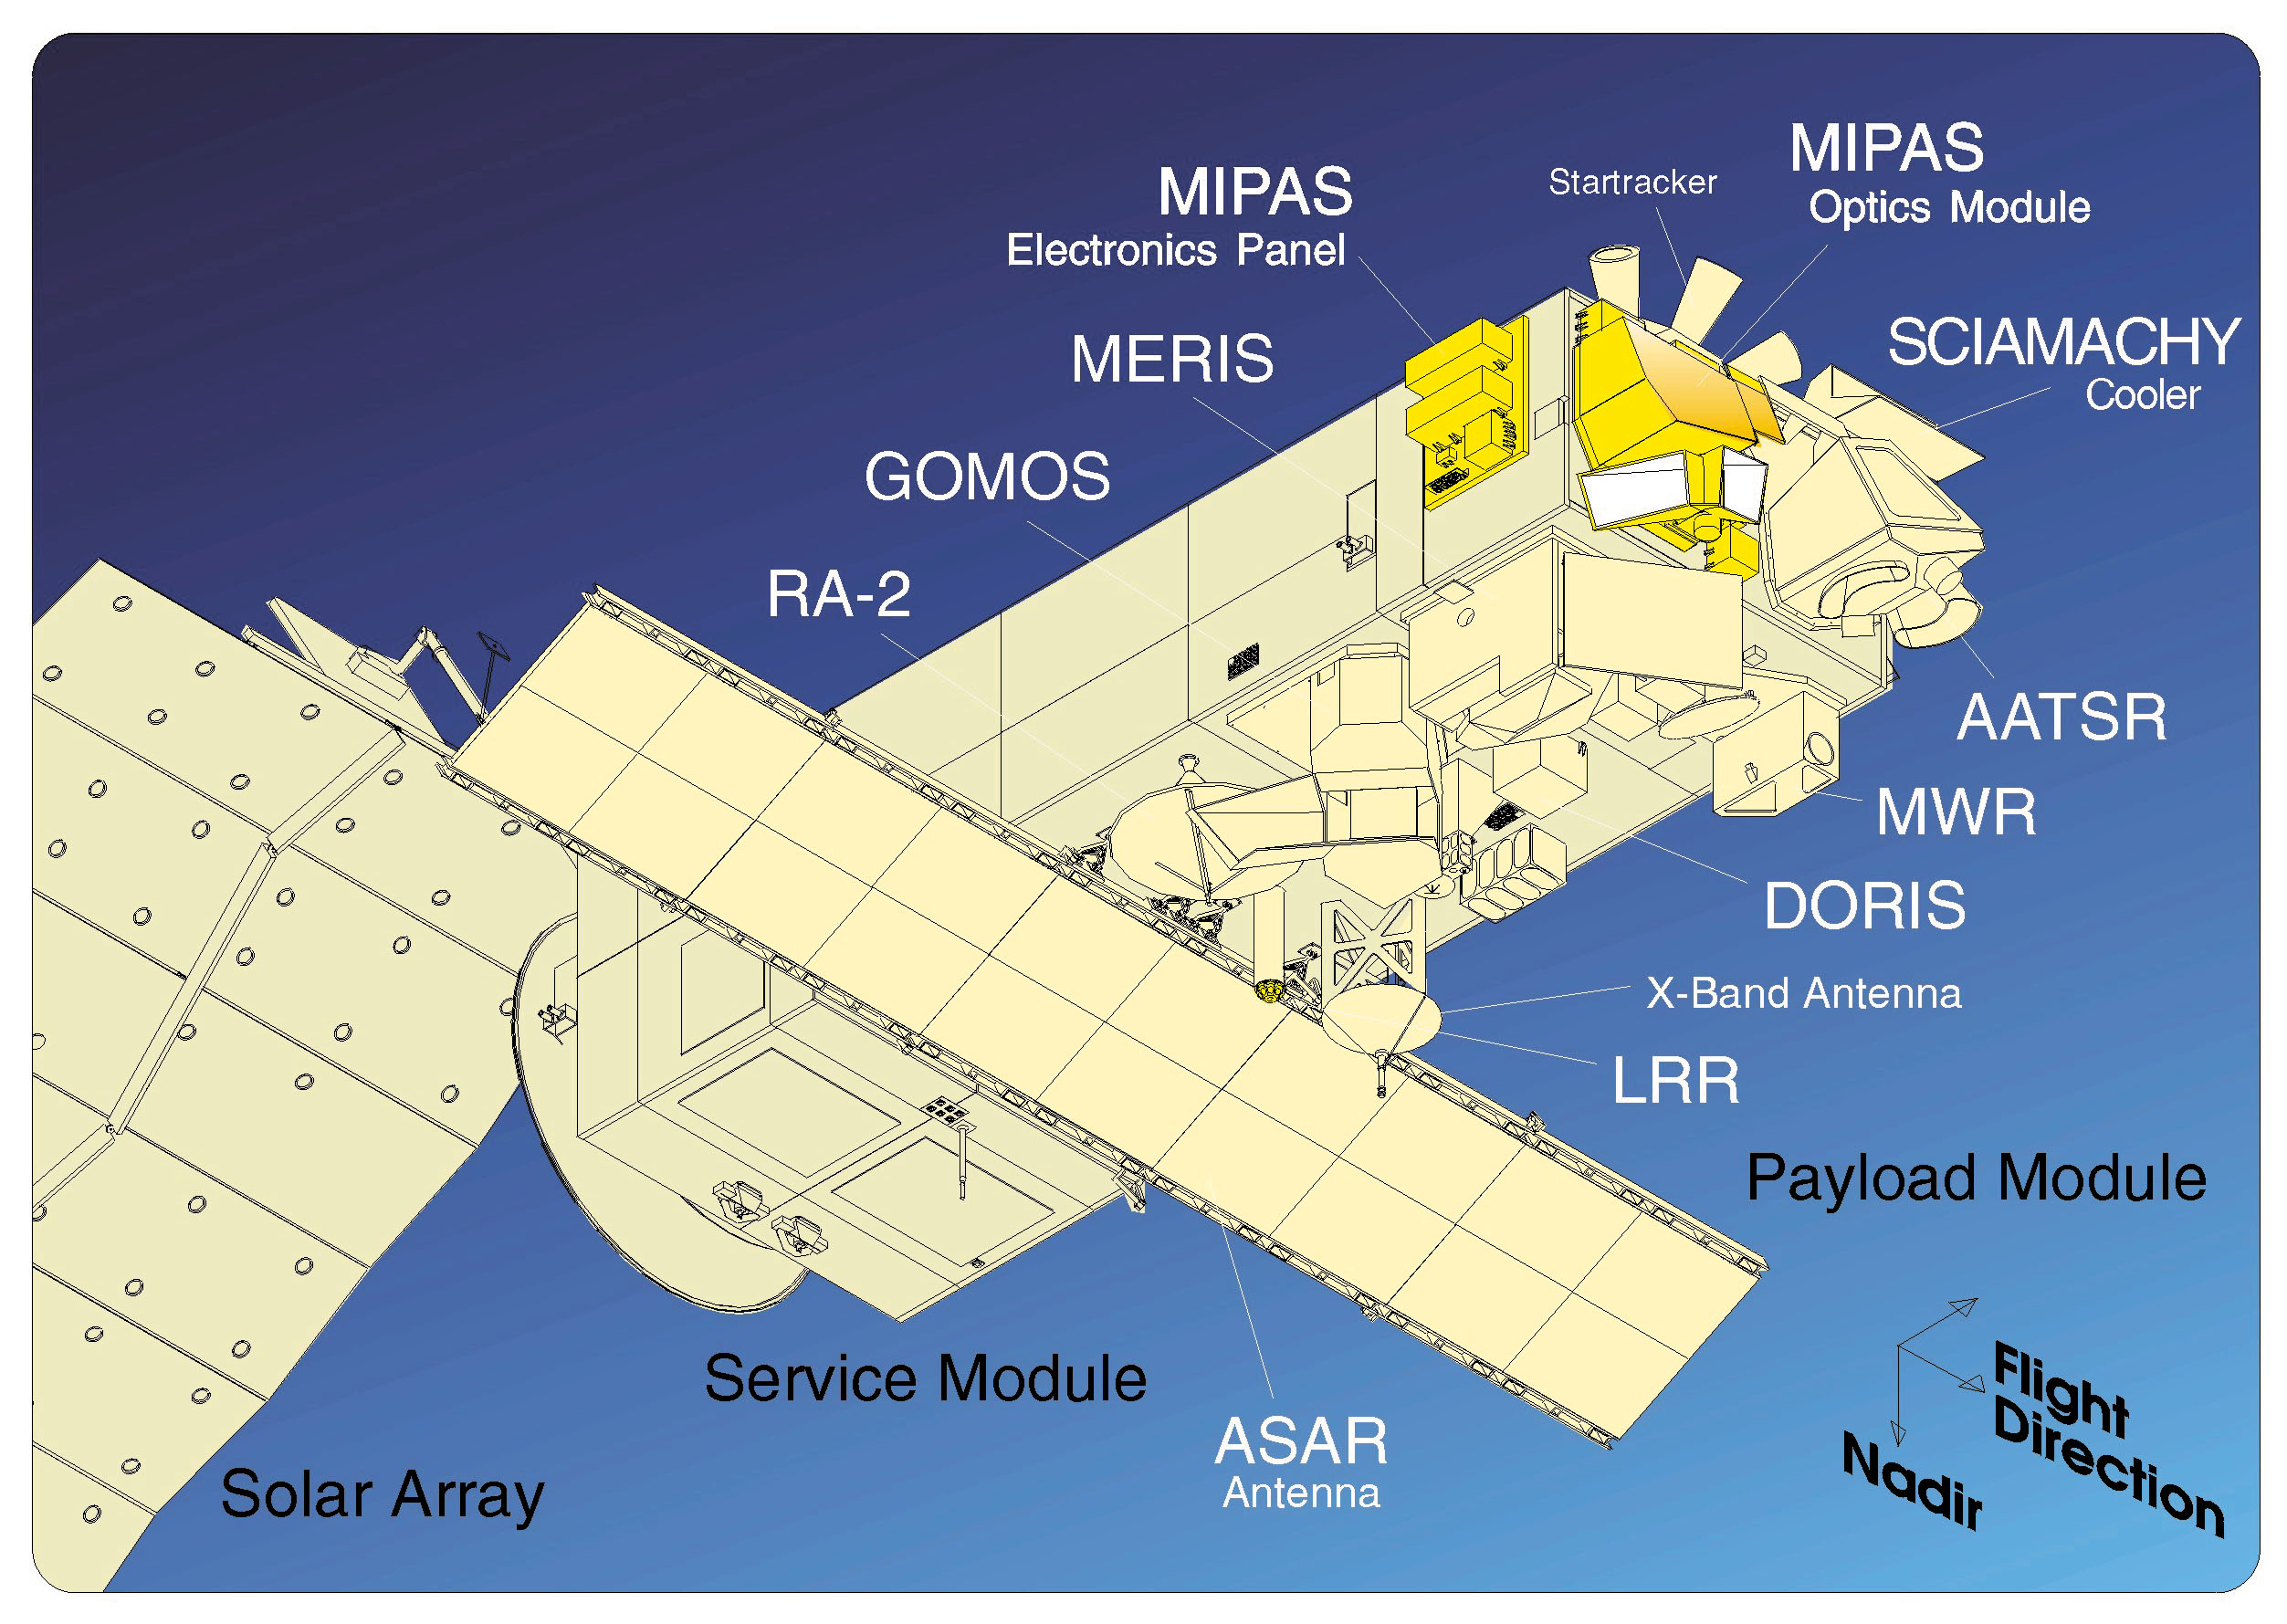 歐洲環境衛星 Envisat 攜帶的設備及儀器